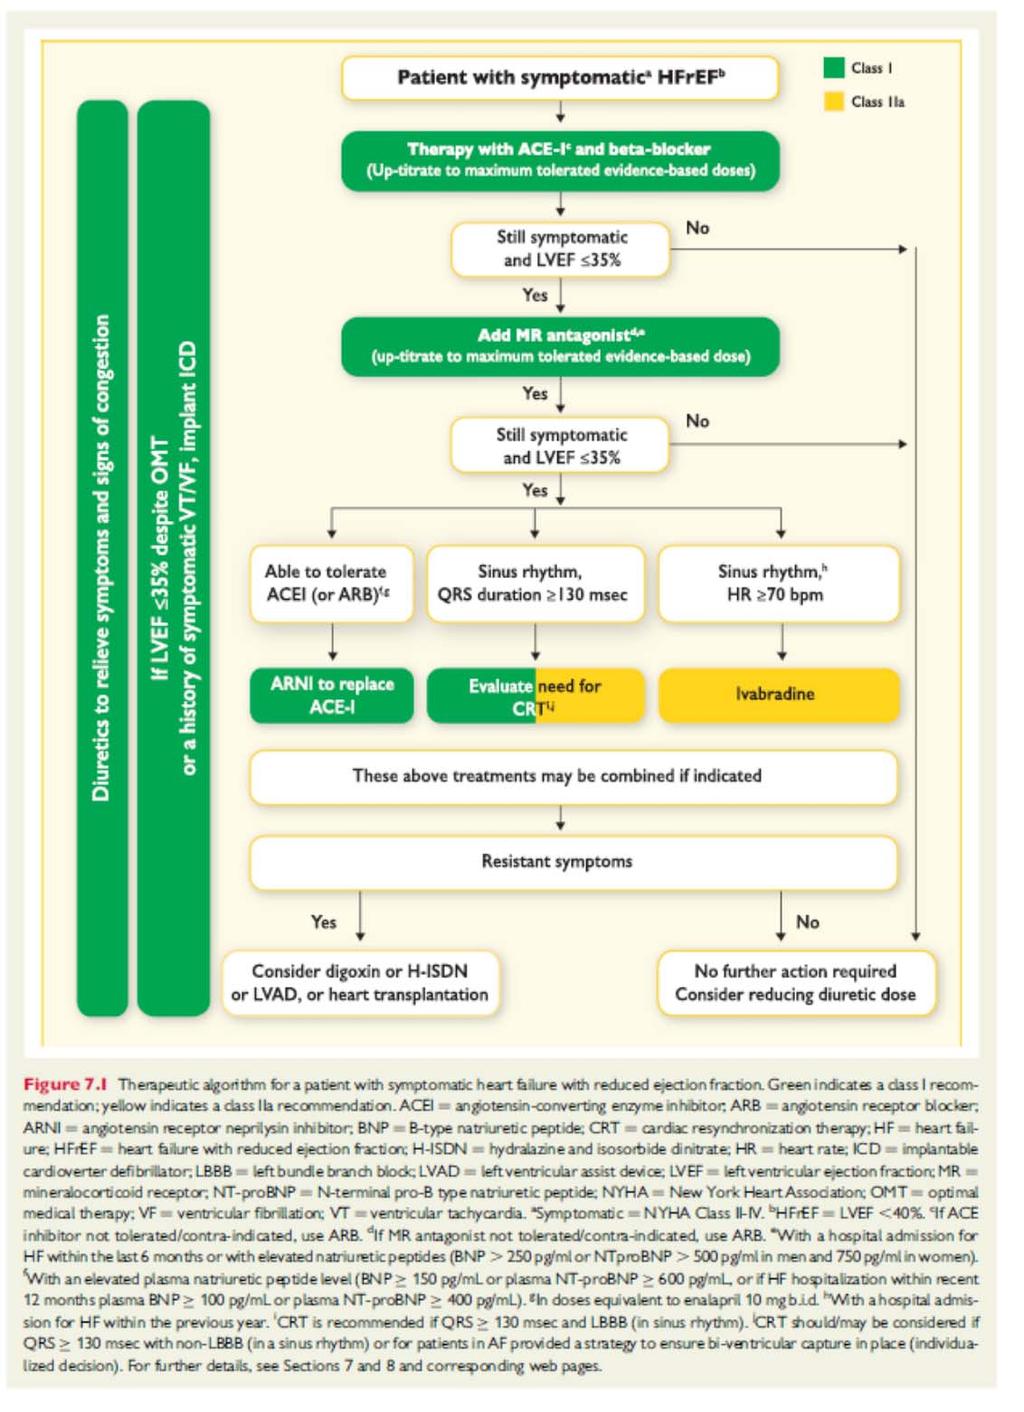 Stratificazione del rischio in base al tipo di prescrizione ACE/ARB + beta-bloccante ACE/ARB + beta-bloccante + antialdosteronico Ivabradina Sacubitril/valsartan Altra terapia